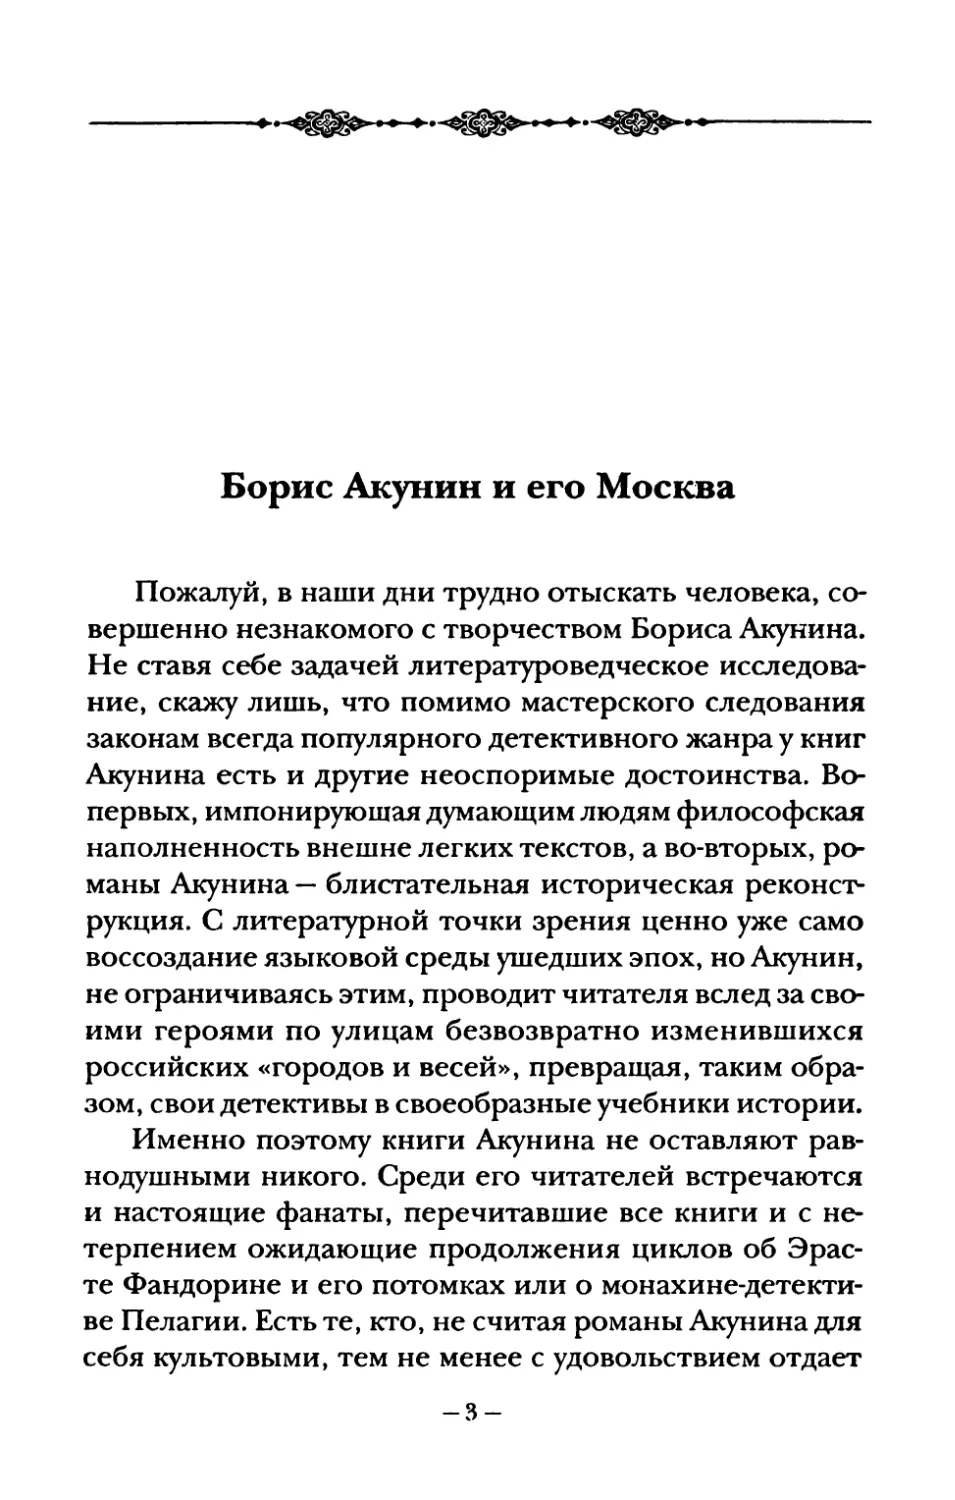 Борис  Акунин  и  его  Москва